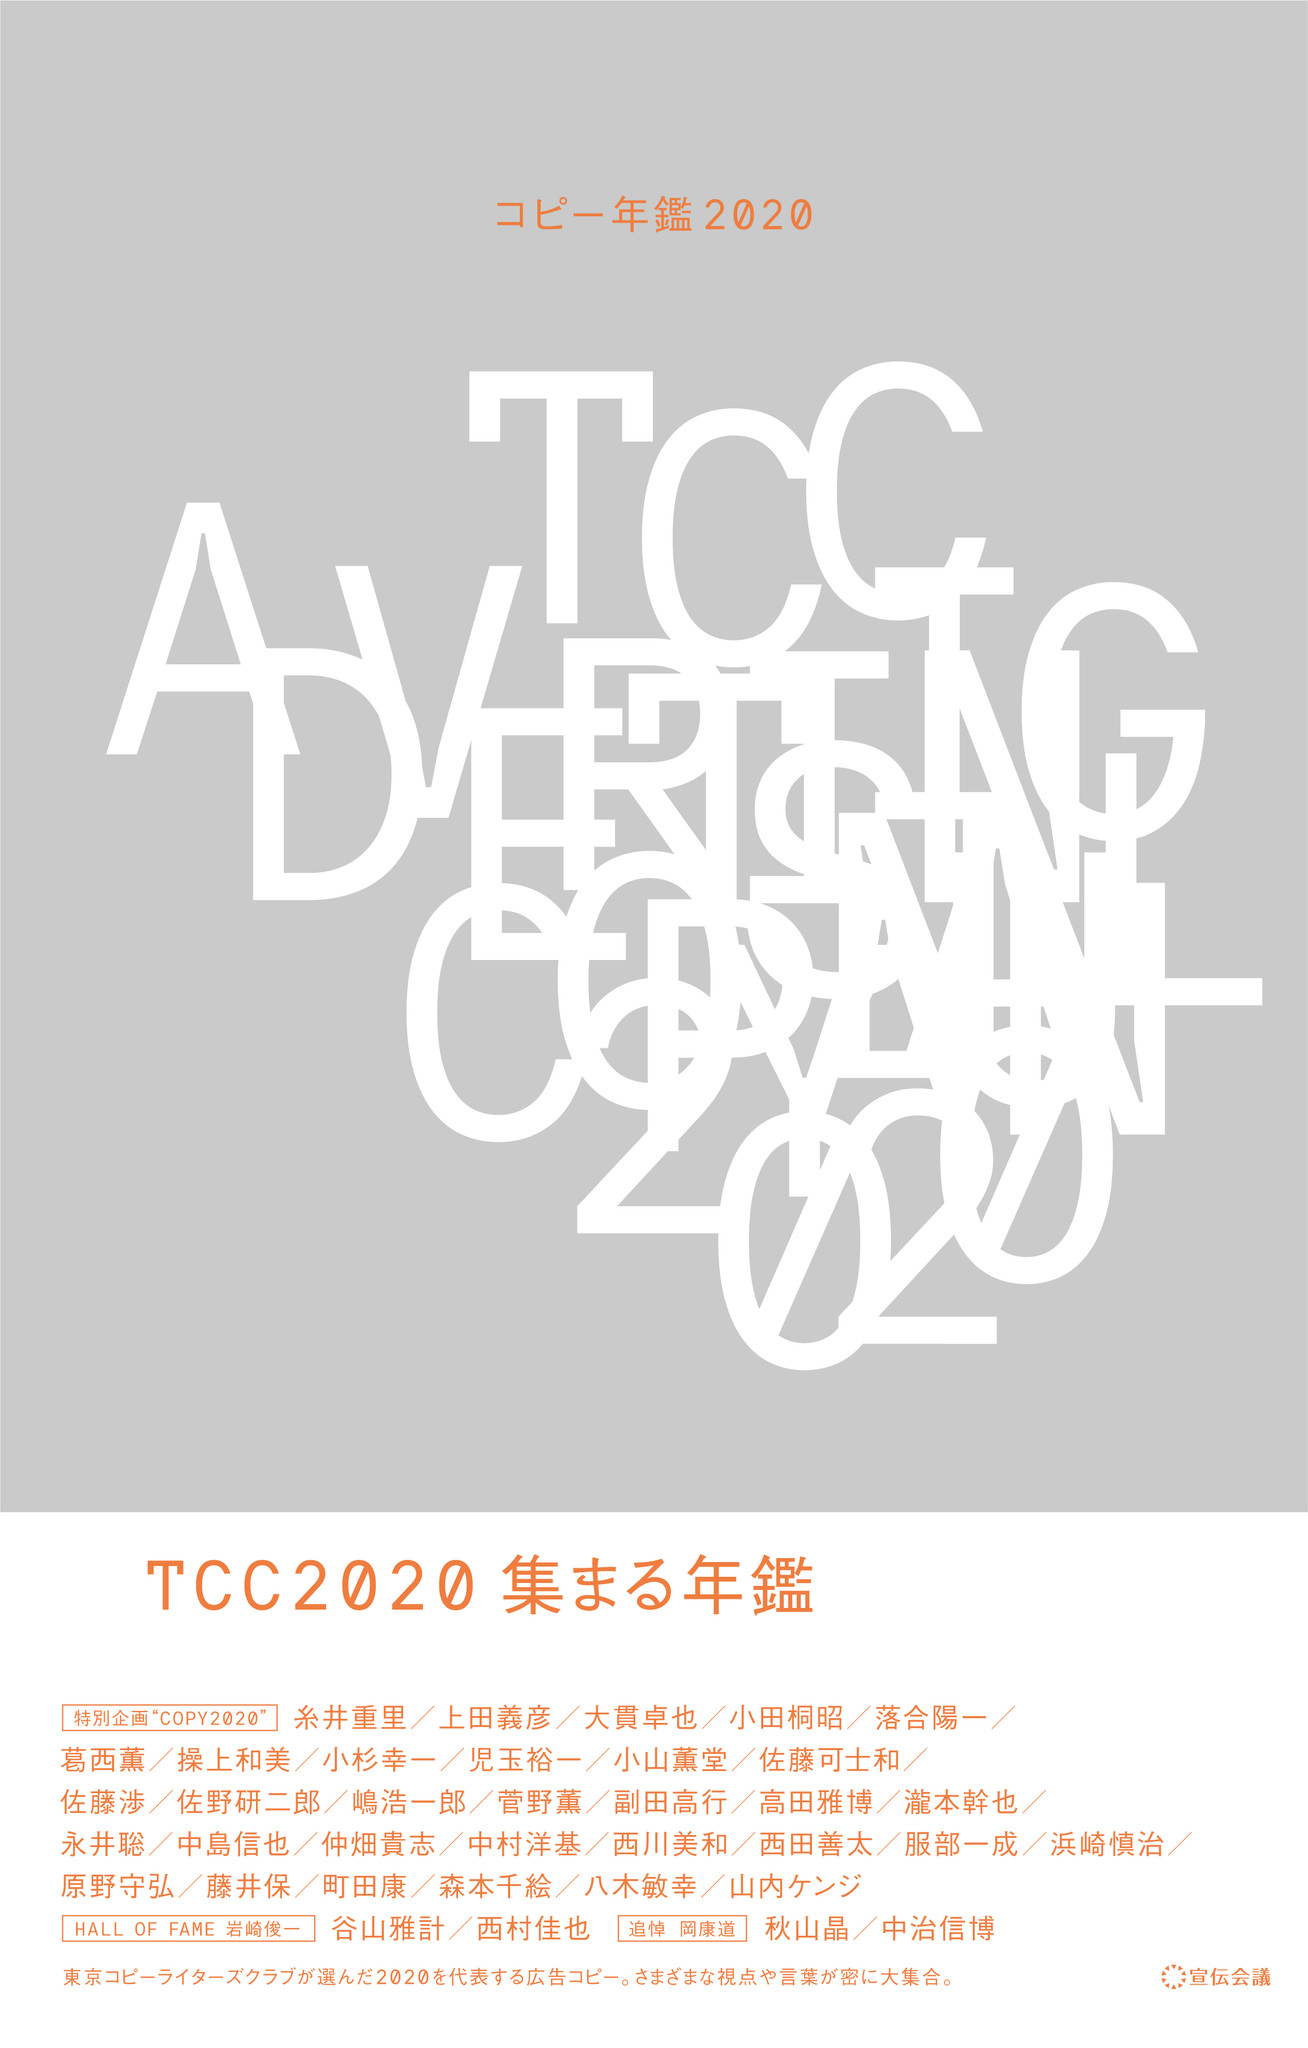 コピー年鑑 2019 TCC 東京コピーライターズクラブ